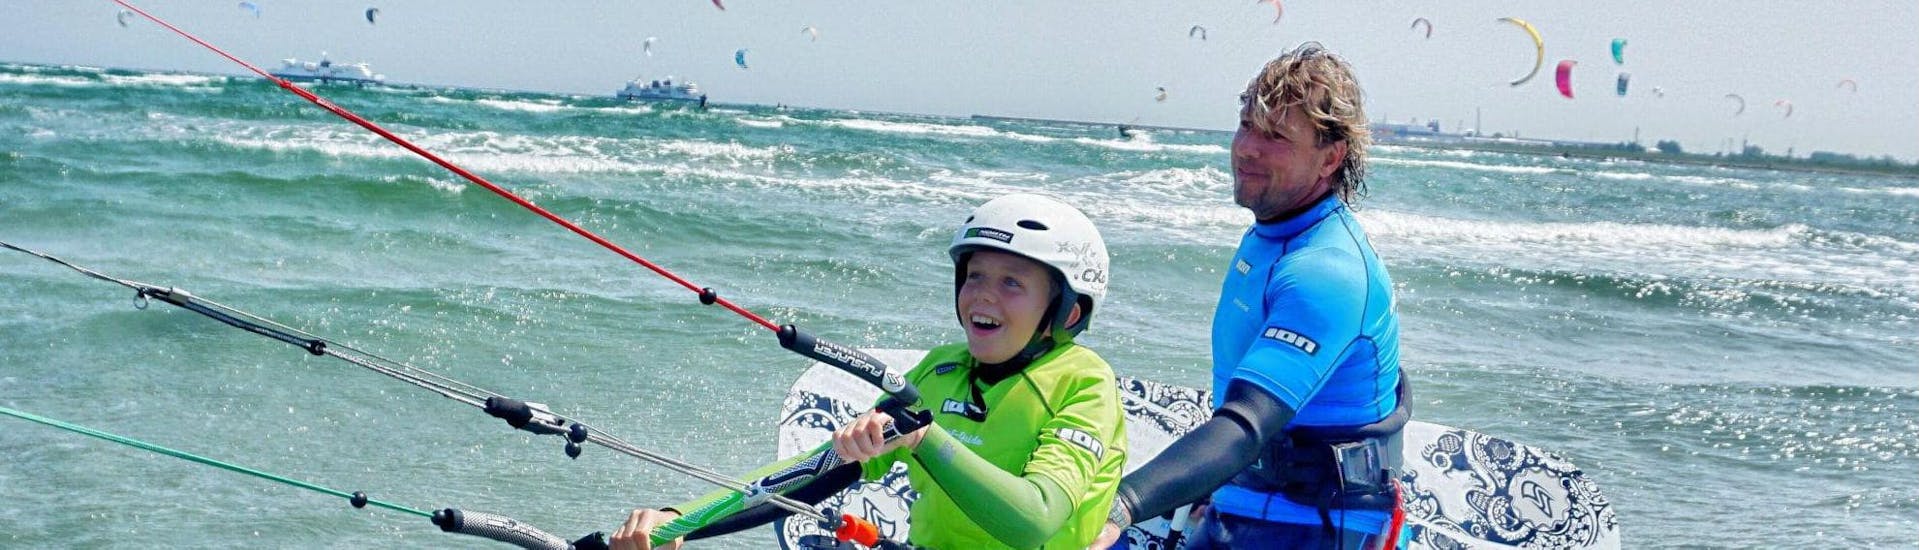 Ein Kind freut sich auf das Kitesurf-Camp für Anfänger ab 8 Jahren in Fehmarn mit Kitesurf-Guide Fehmarn.